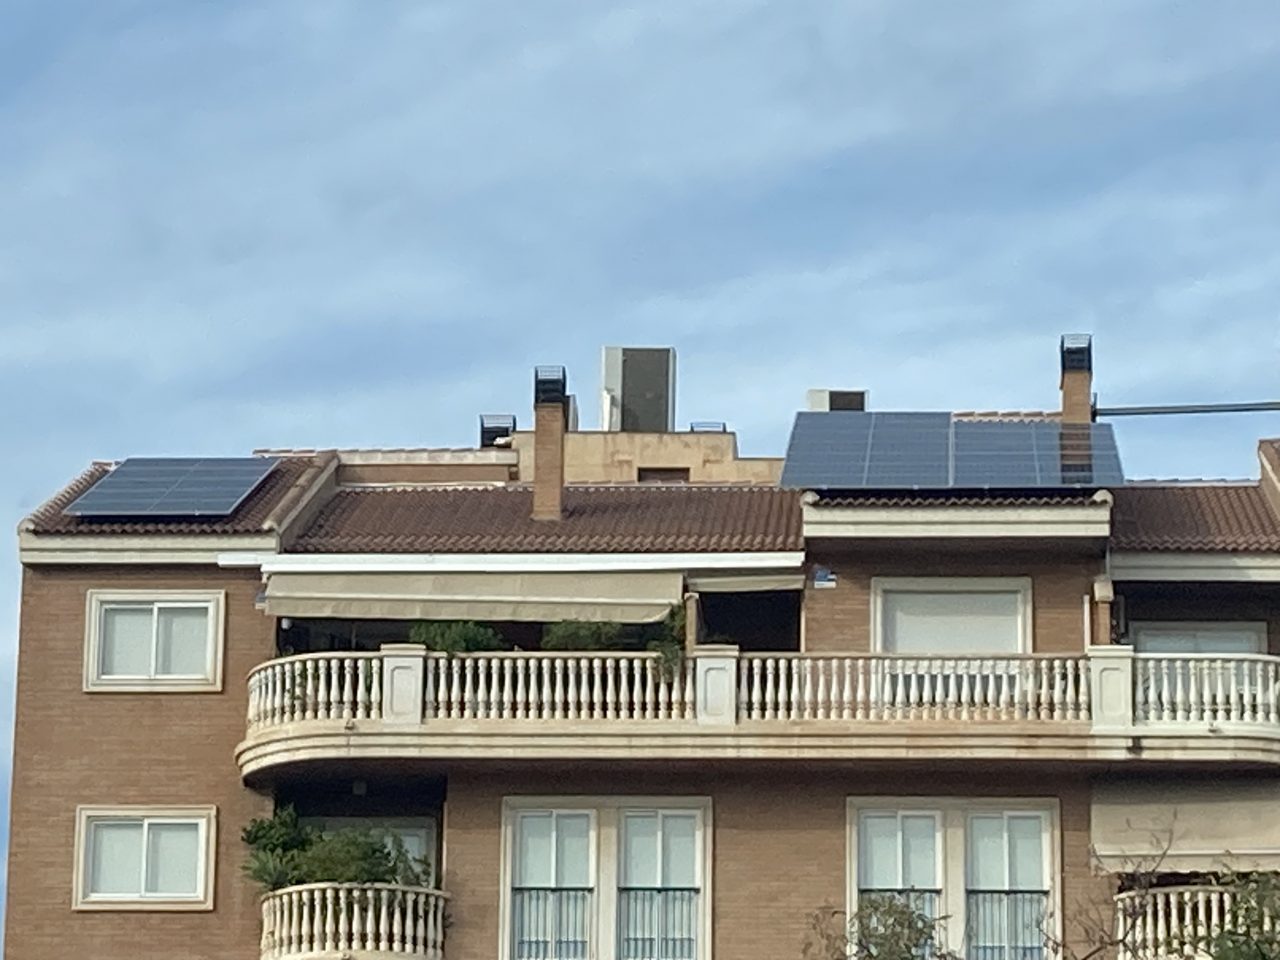 Instalación solar fotovoltaica particular en comunidad de vecinos